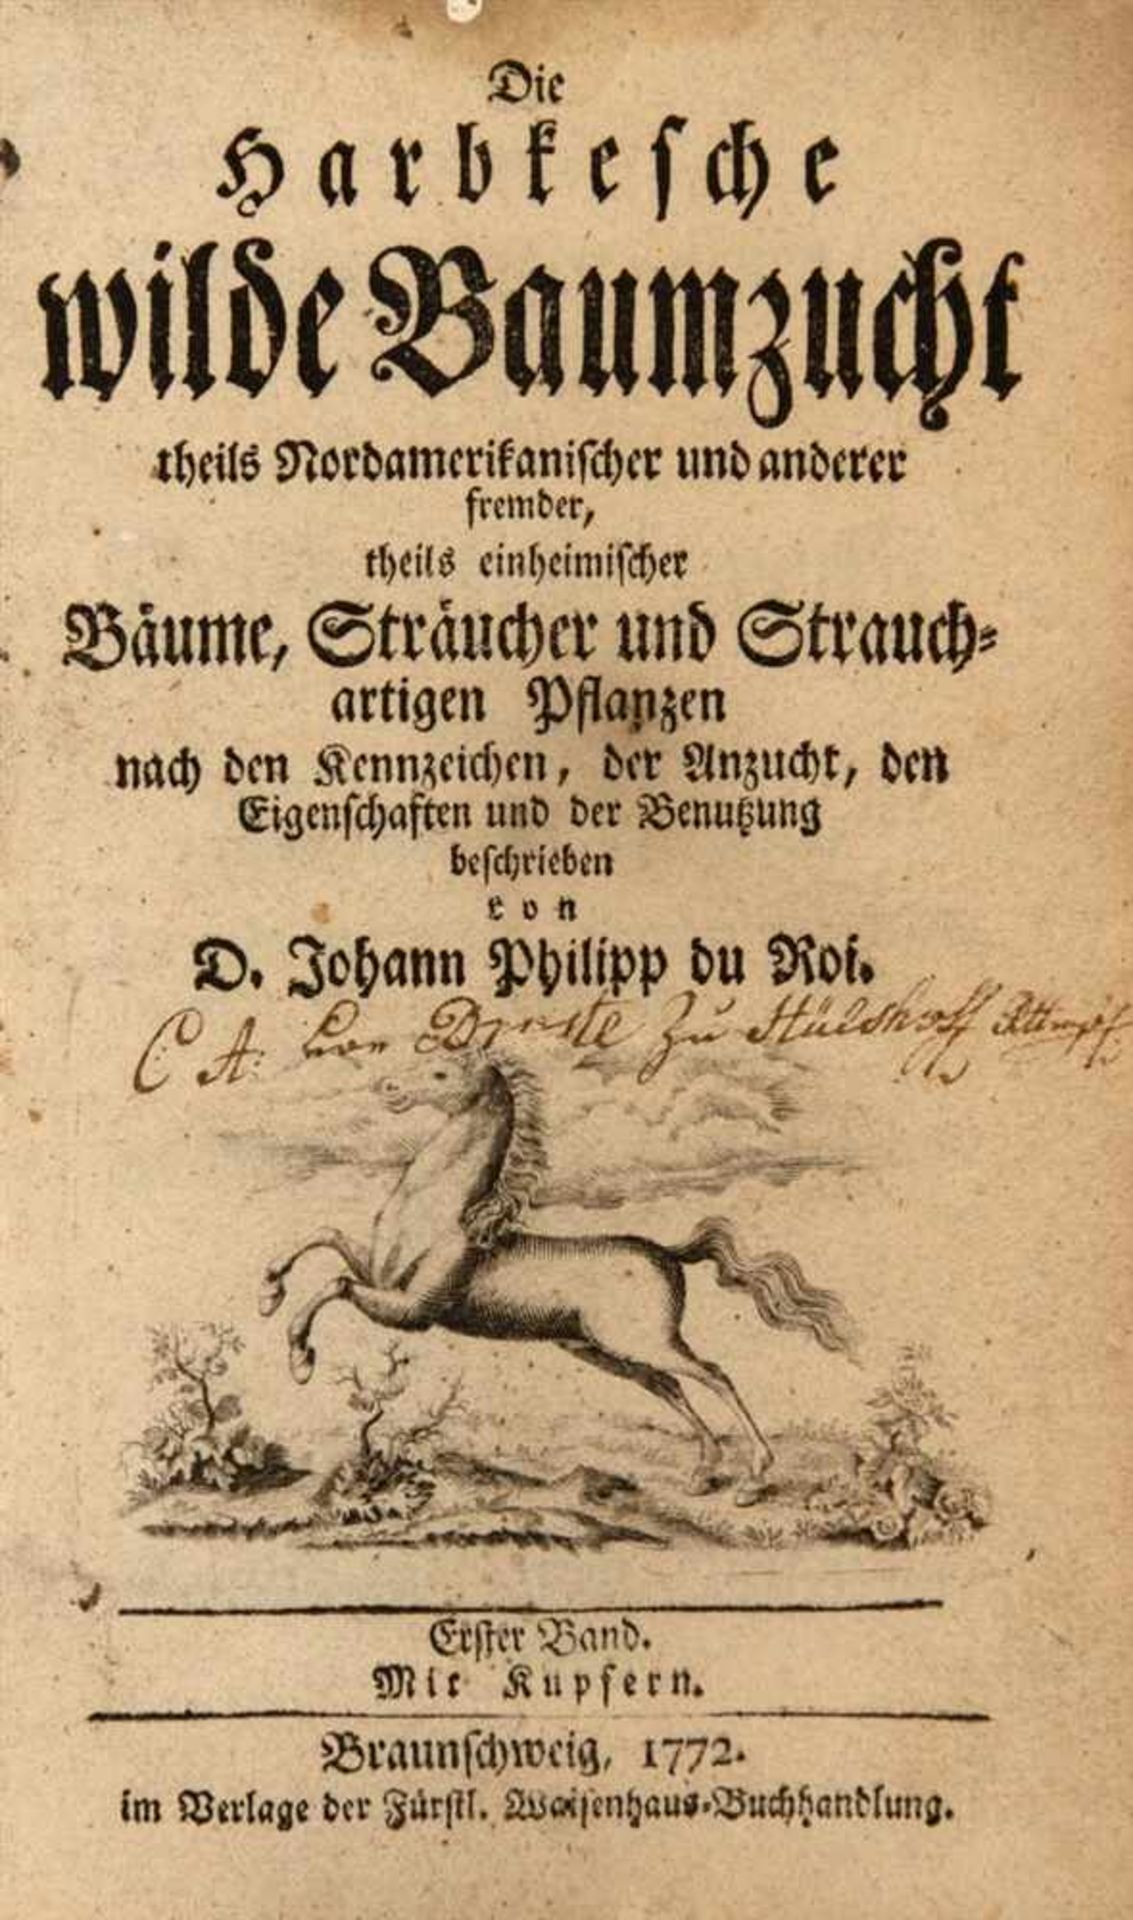 Du Roi, Johann Philipp: Die Harbkesche wilde Baumzucht theils nordamerikanischer und anderer